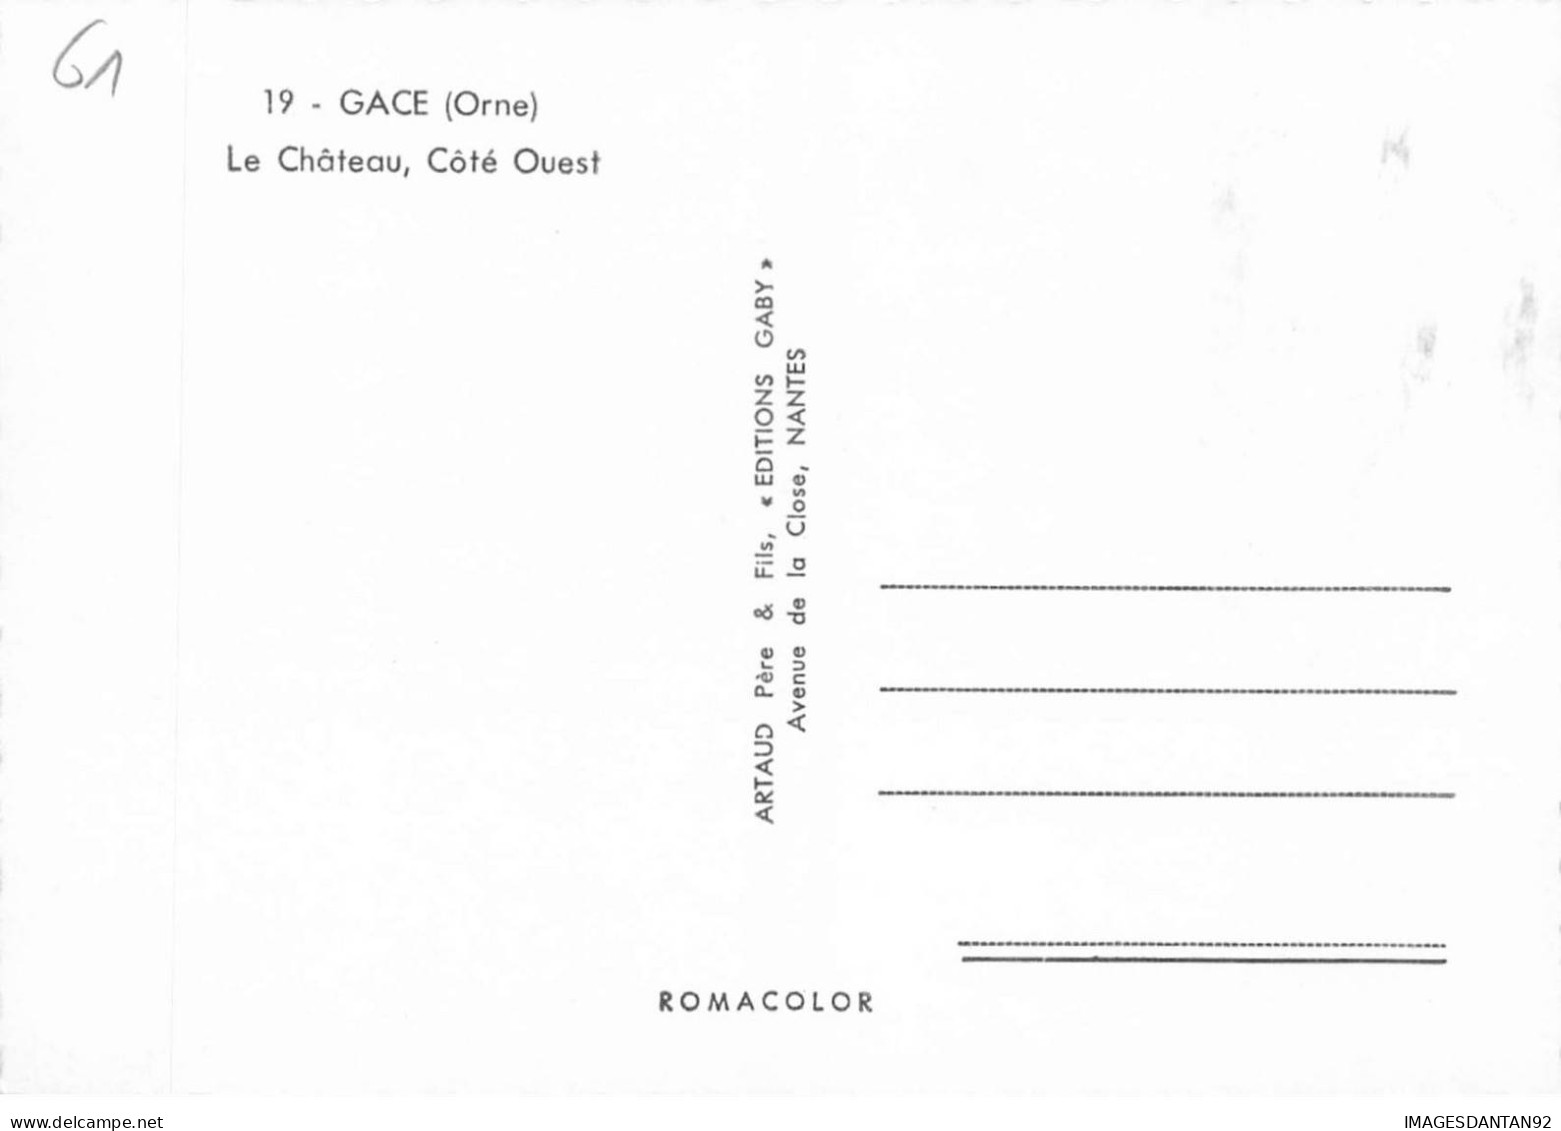 61 GACE AE#DC452 LE CHATEAU COTE OUEST - Gace